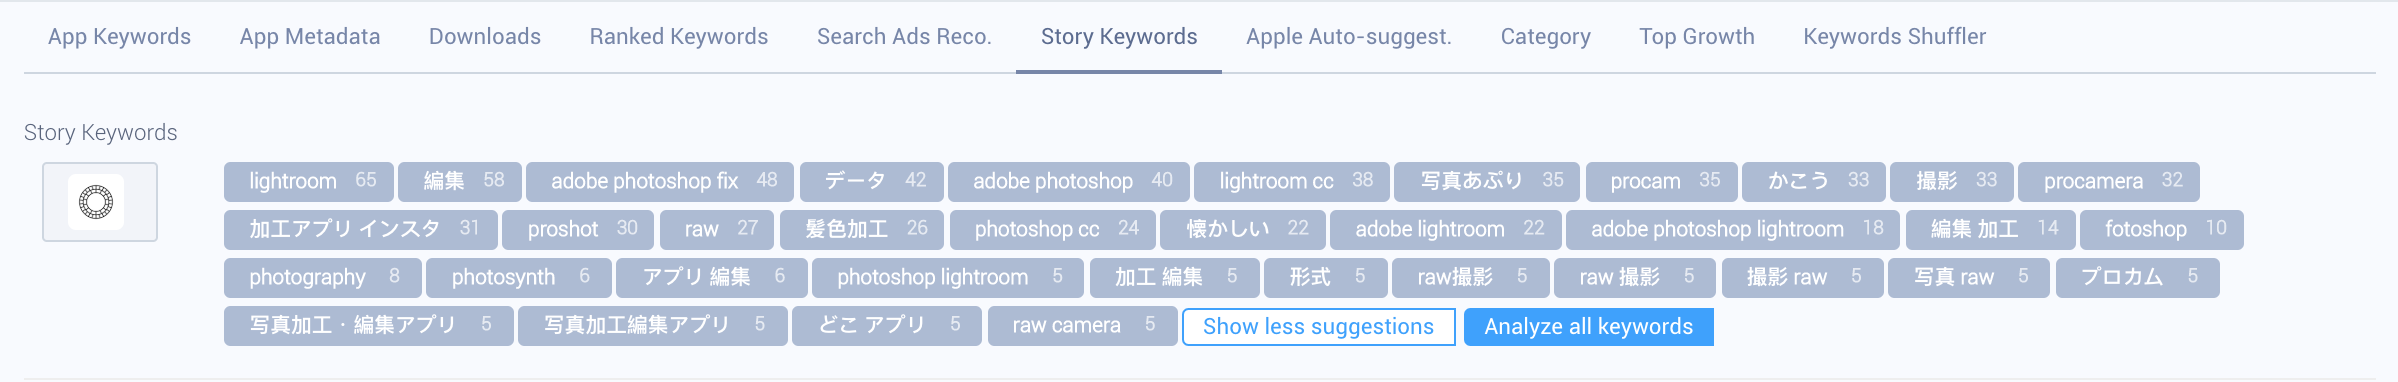 Story keywords for VSCO (Japan) on AppTweak.